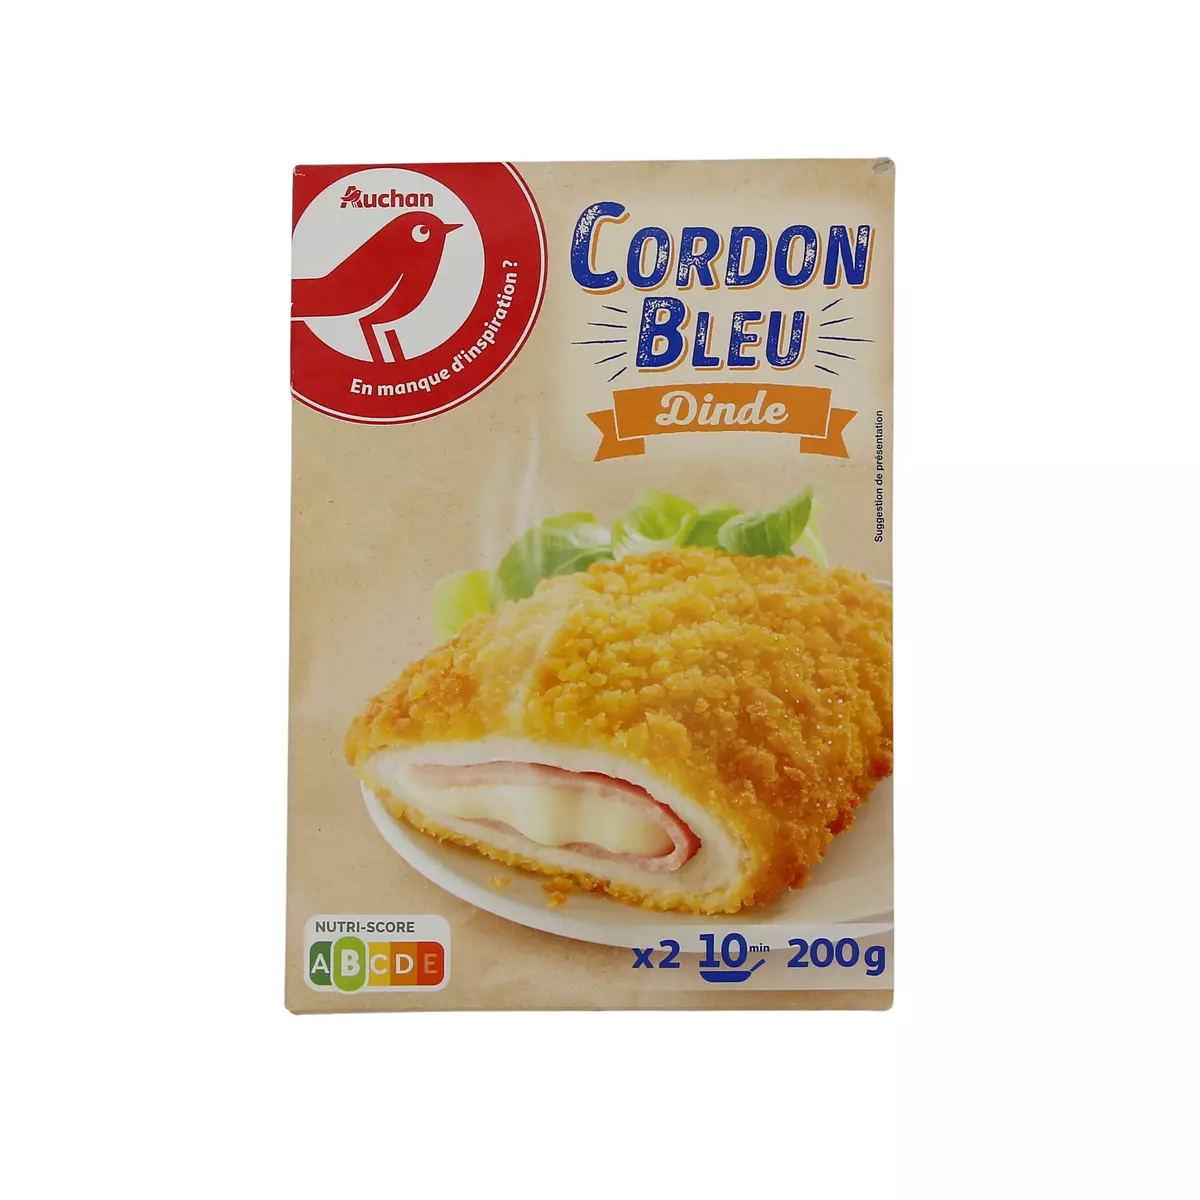 AUCHAN Cordon bleu 2 200g